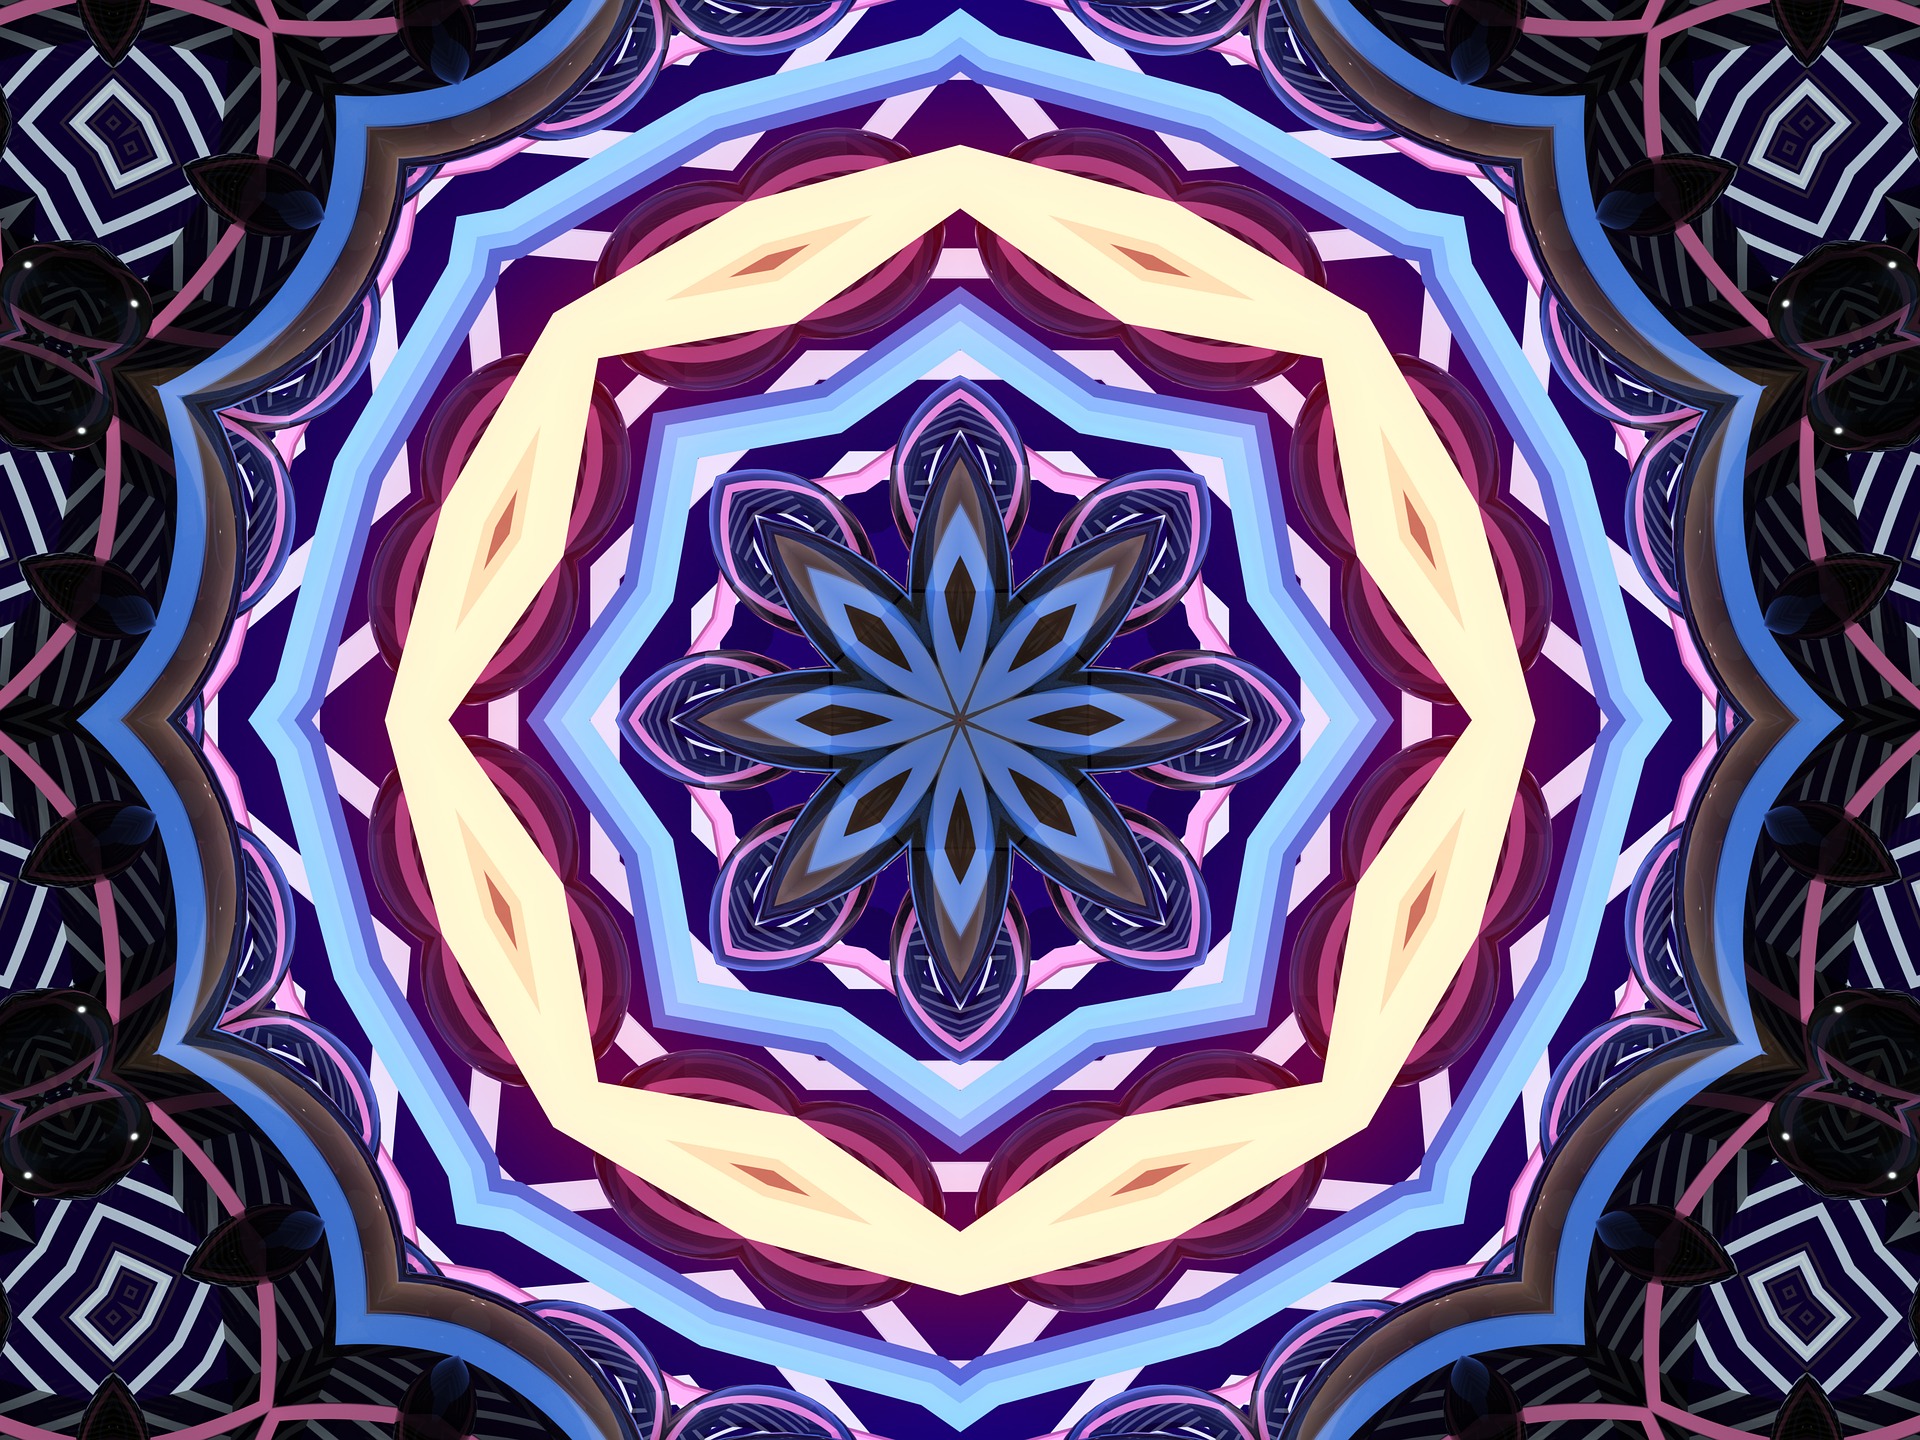 Mandala (c) www.pixabay.com